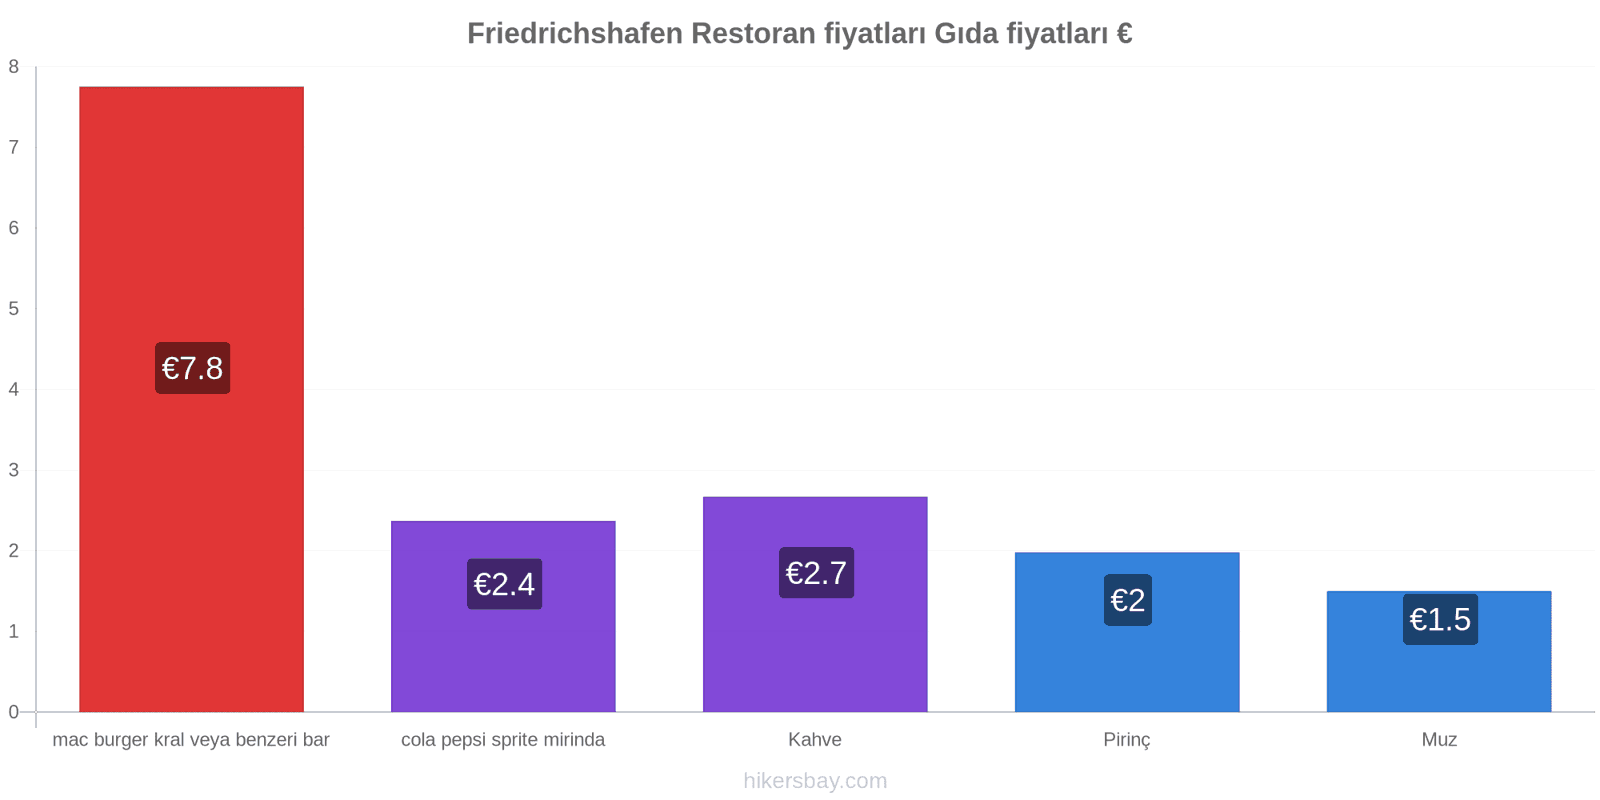 Friedrichshafen fiyat değişiklikleri hikersbay.com